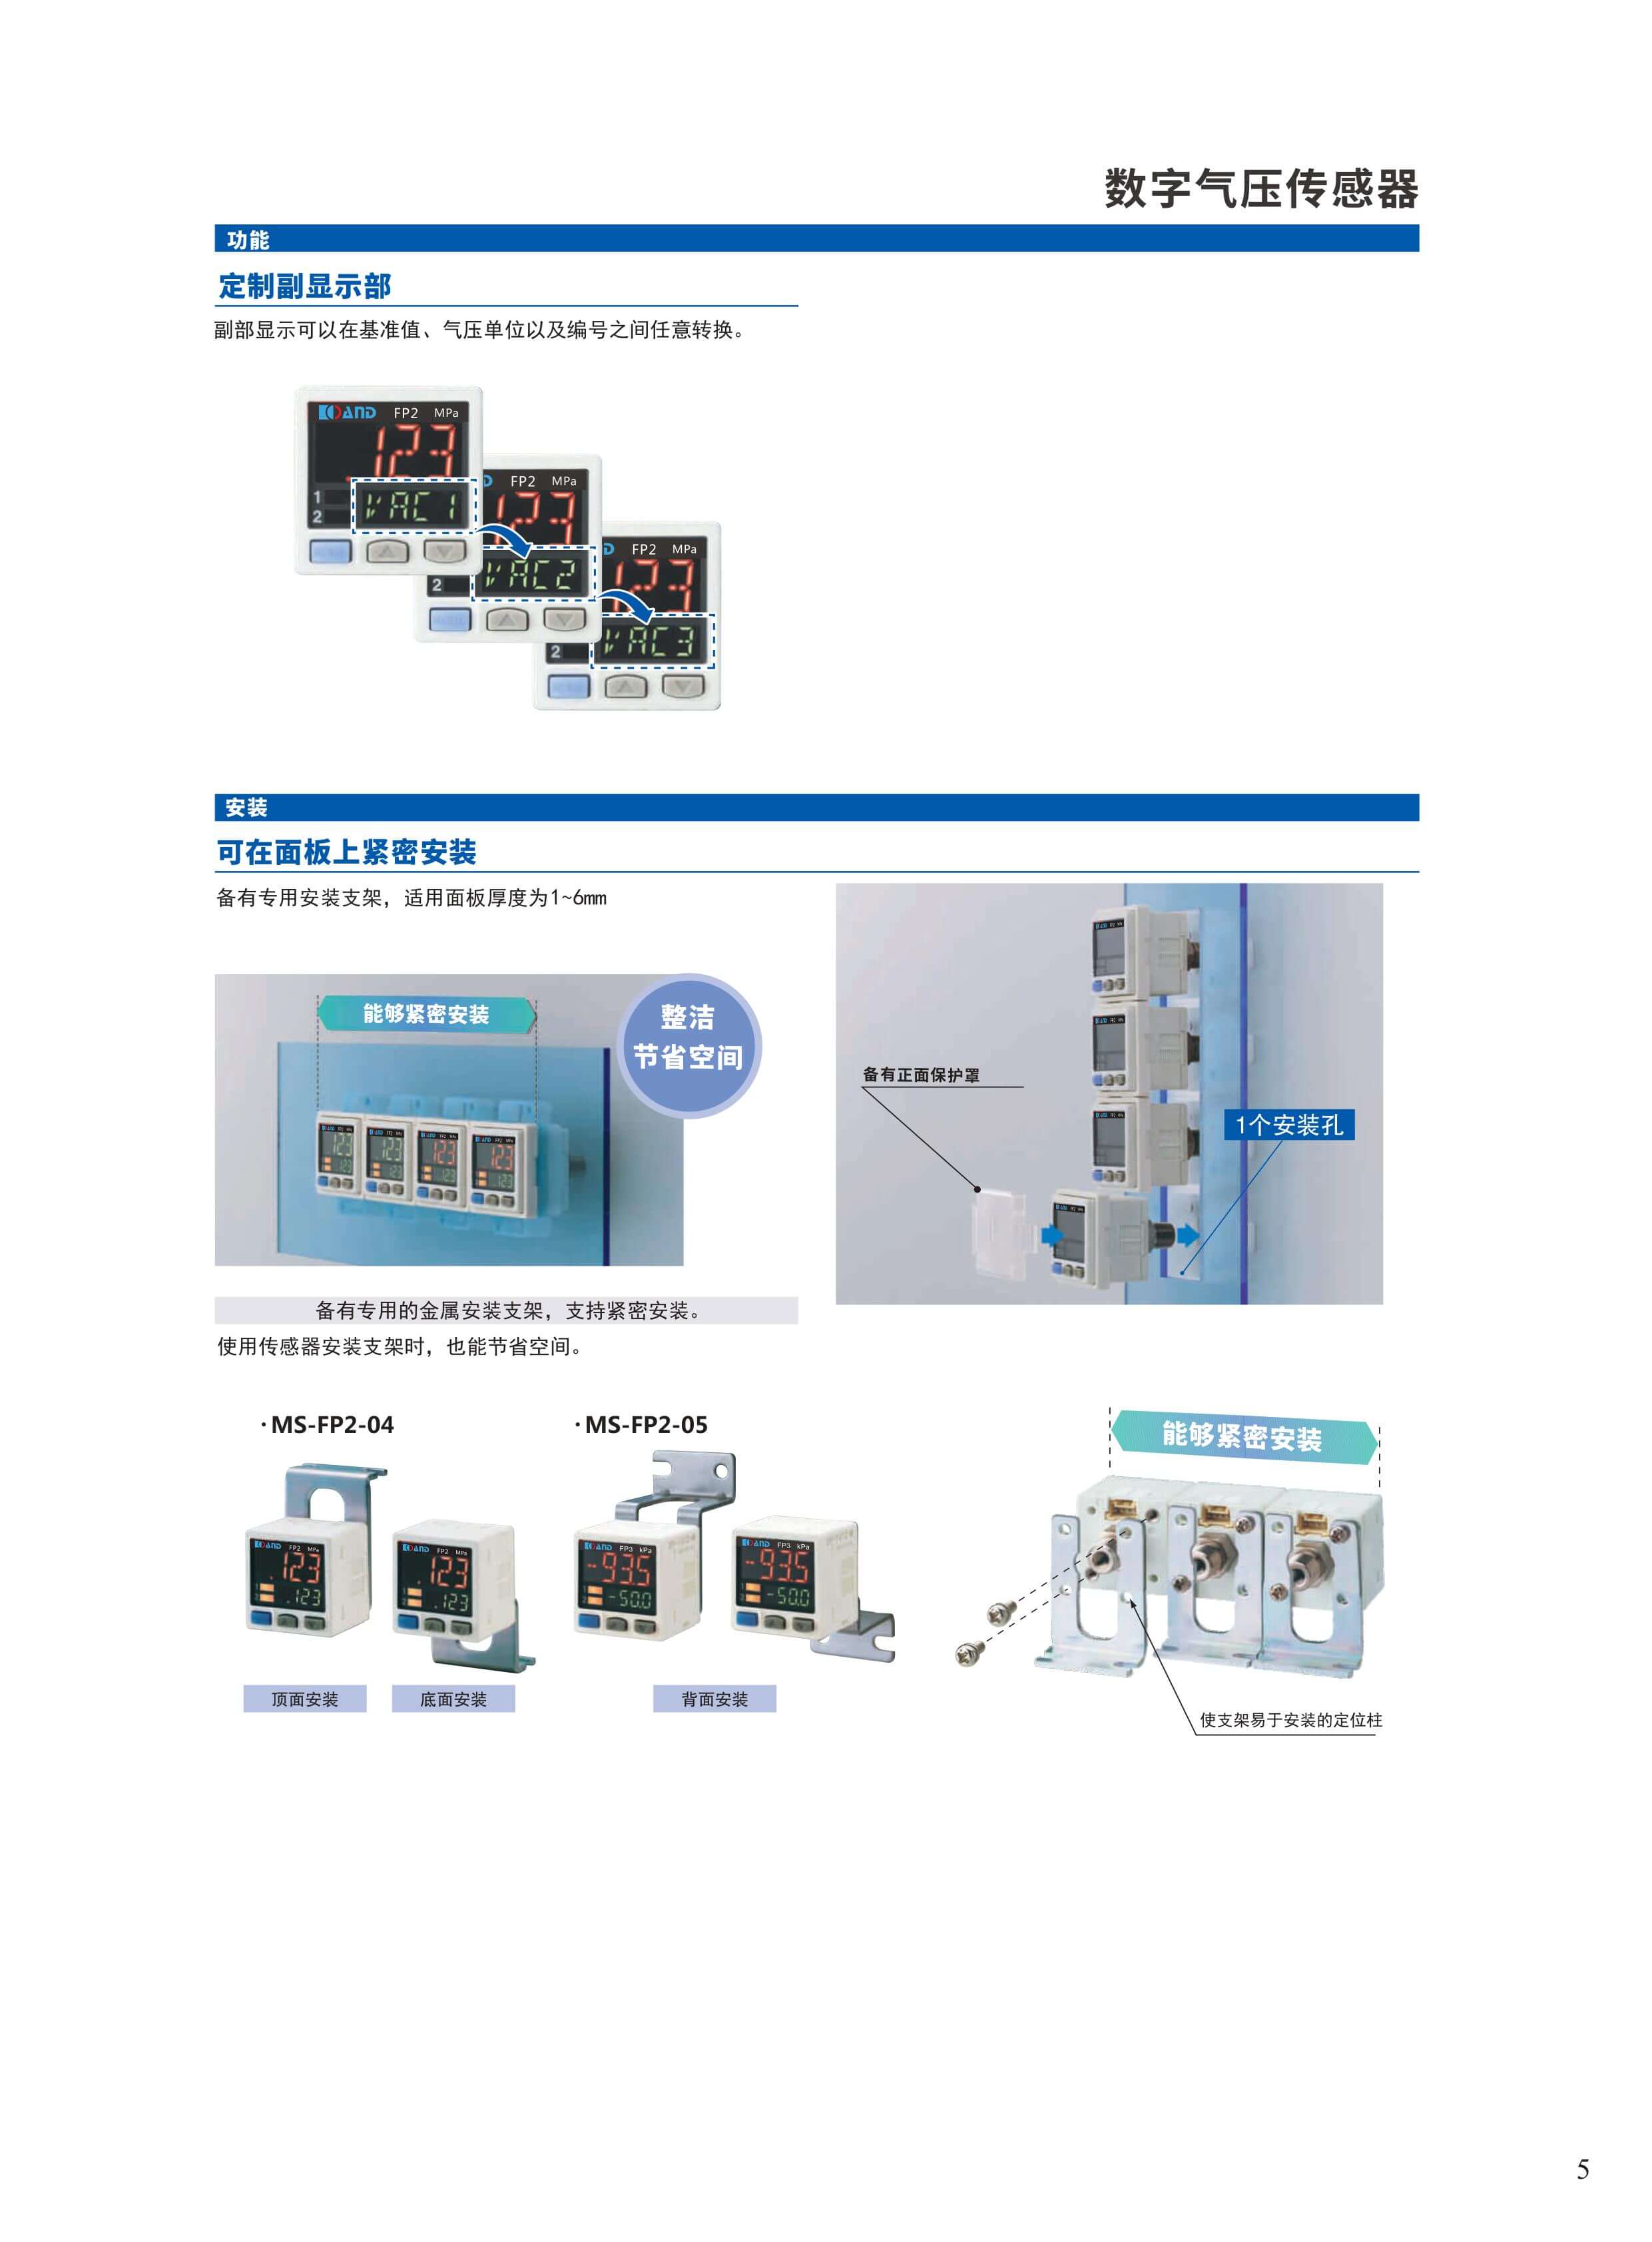 陀螺仪-绝对式旋转变压器推荐-深圳市艾而特工业自动化设备有限公司